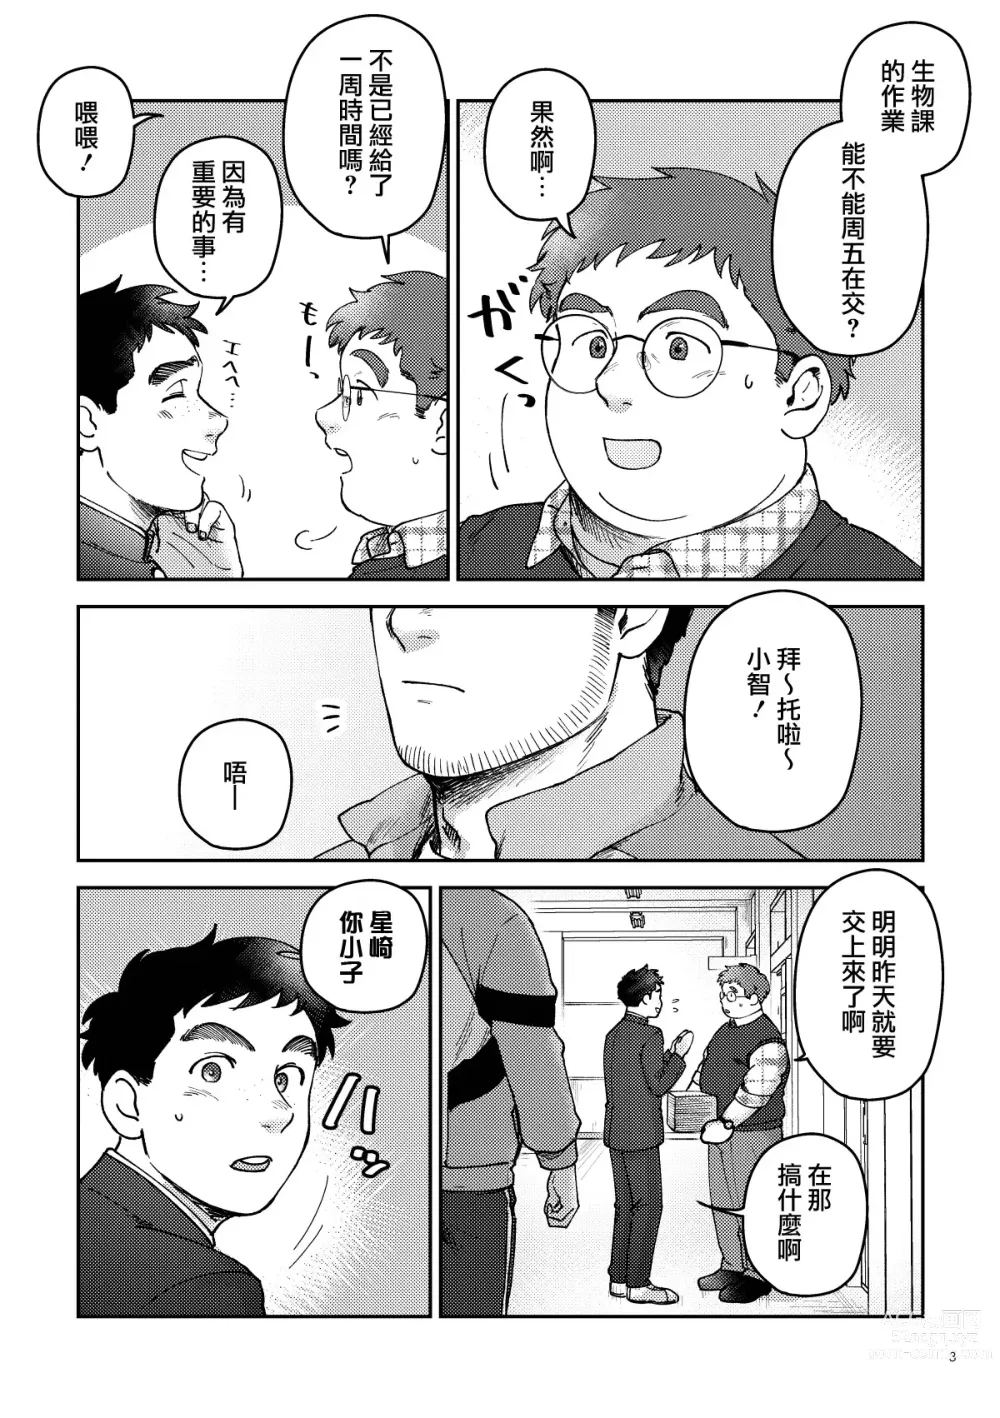 Page 3 of manga はいよろこんでのれイメージギャップハートビート